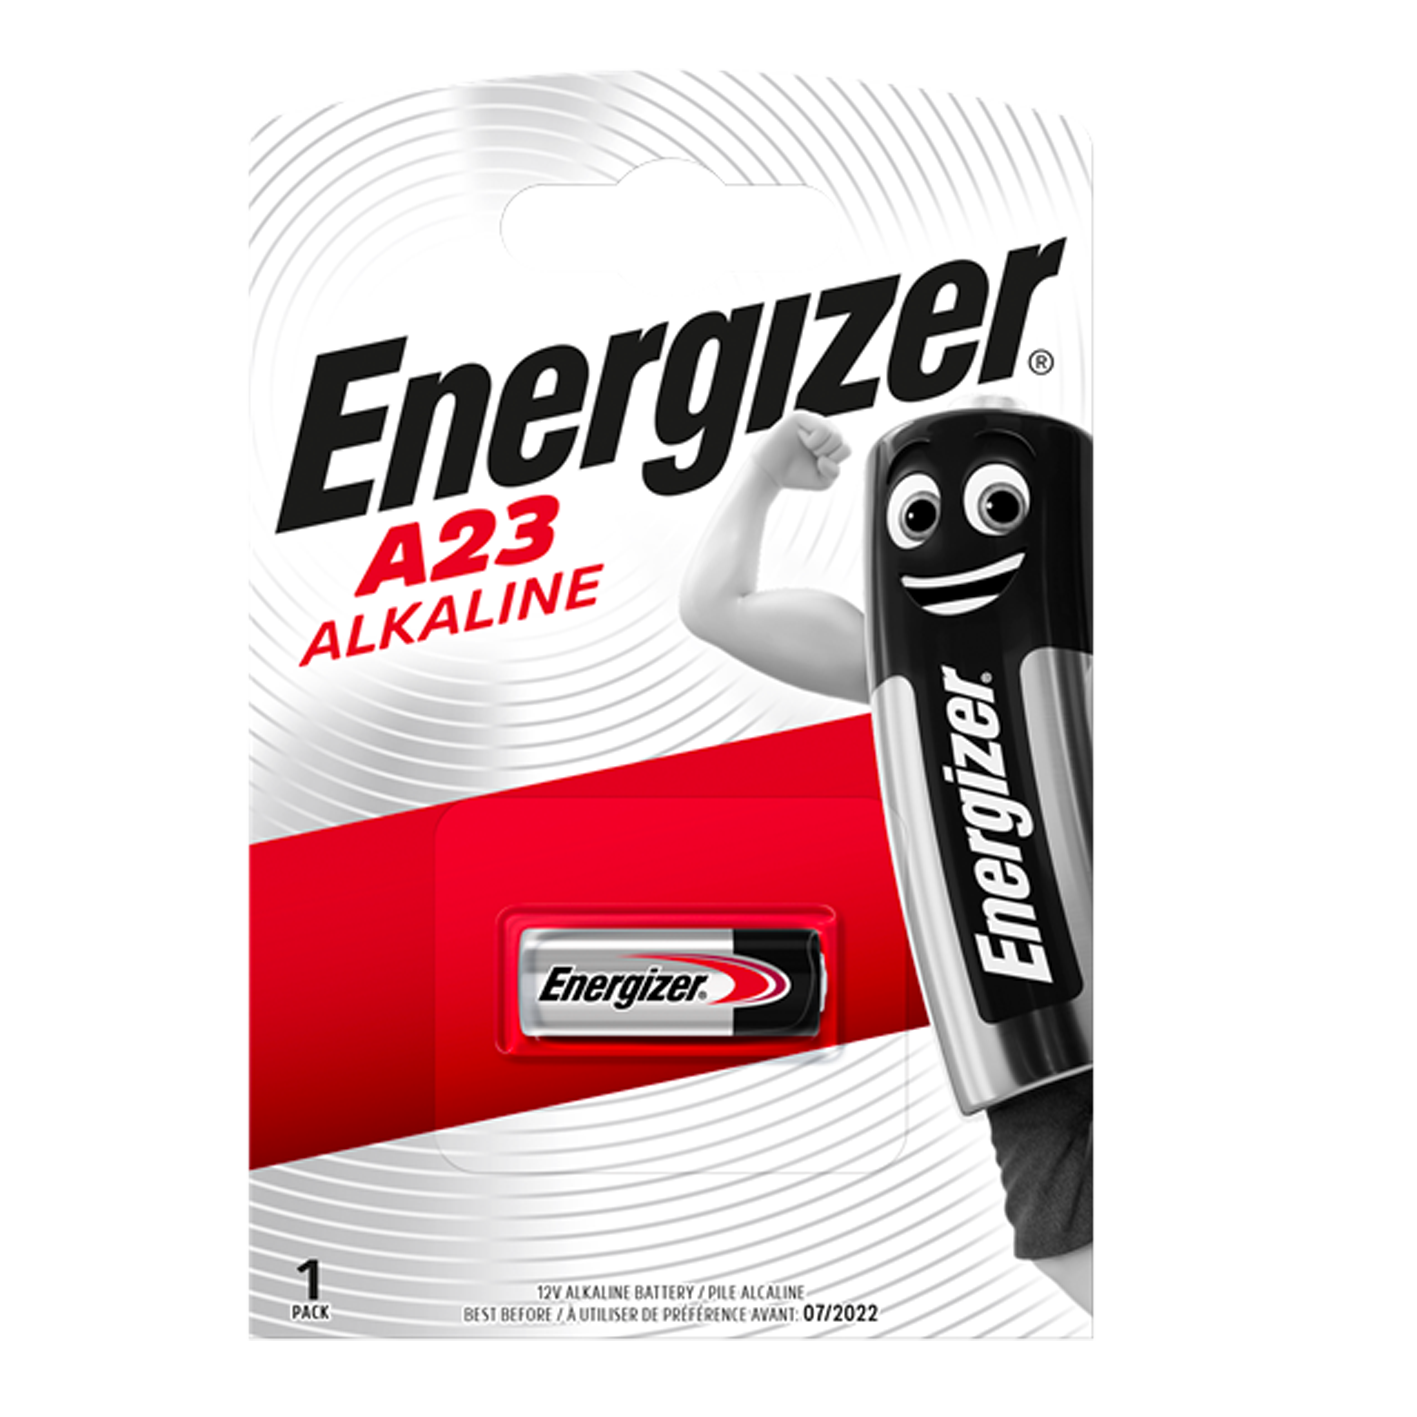 Energizer E23A/A23 alcalino, paquete de 1